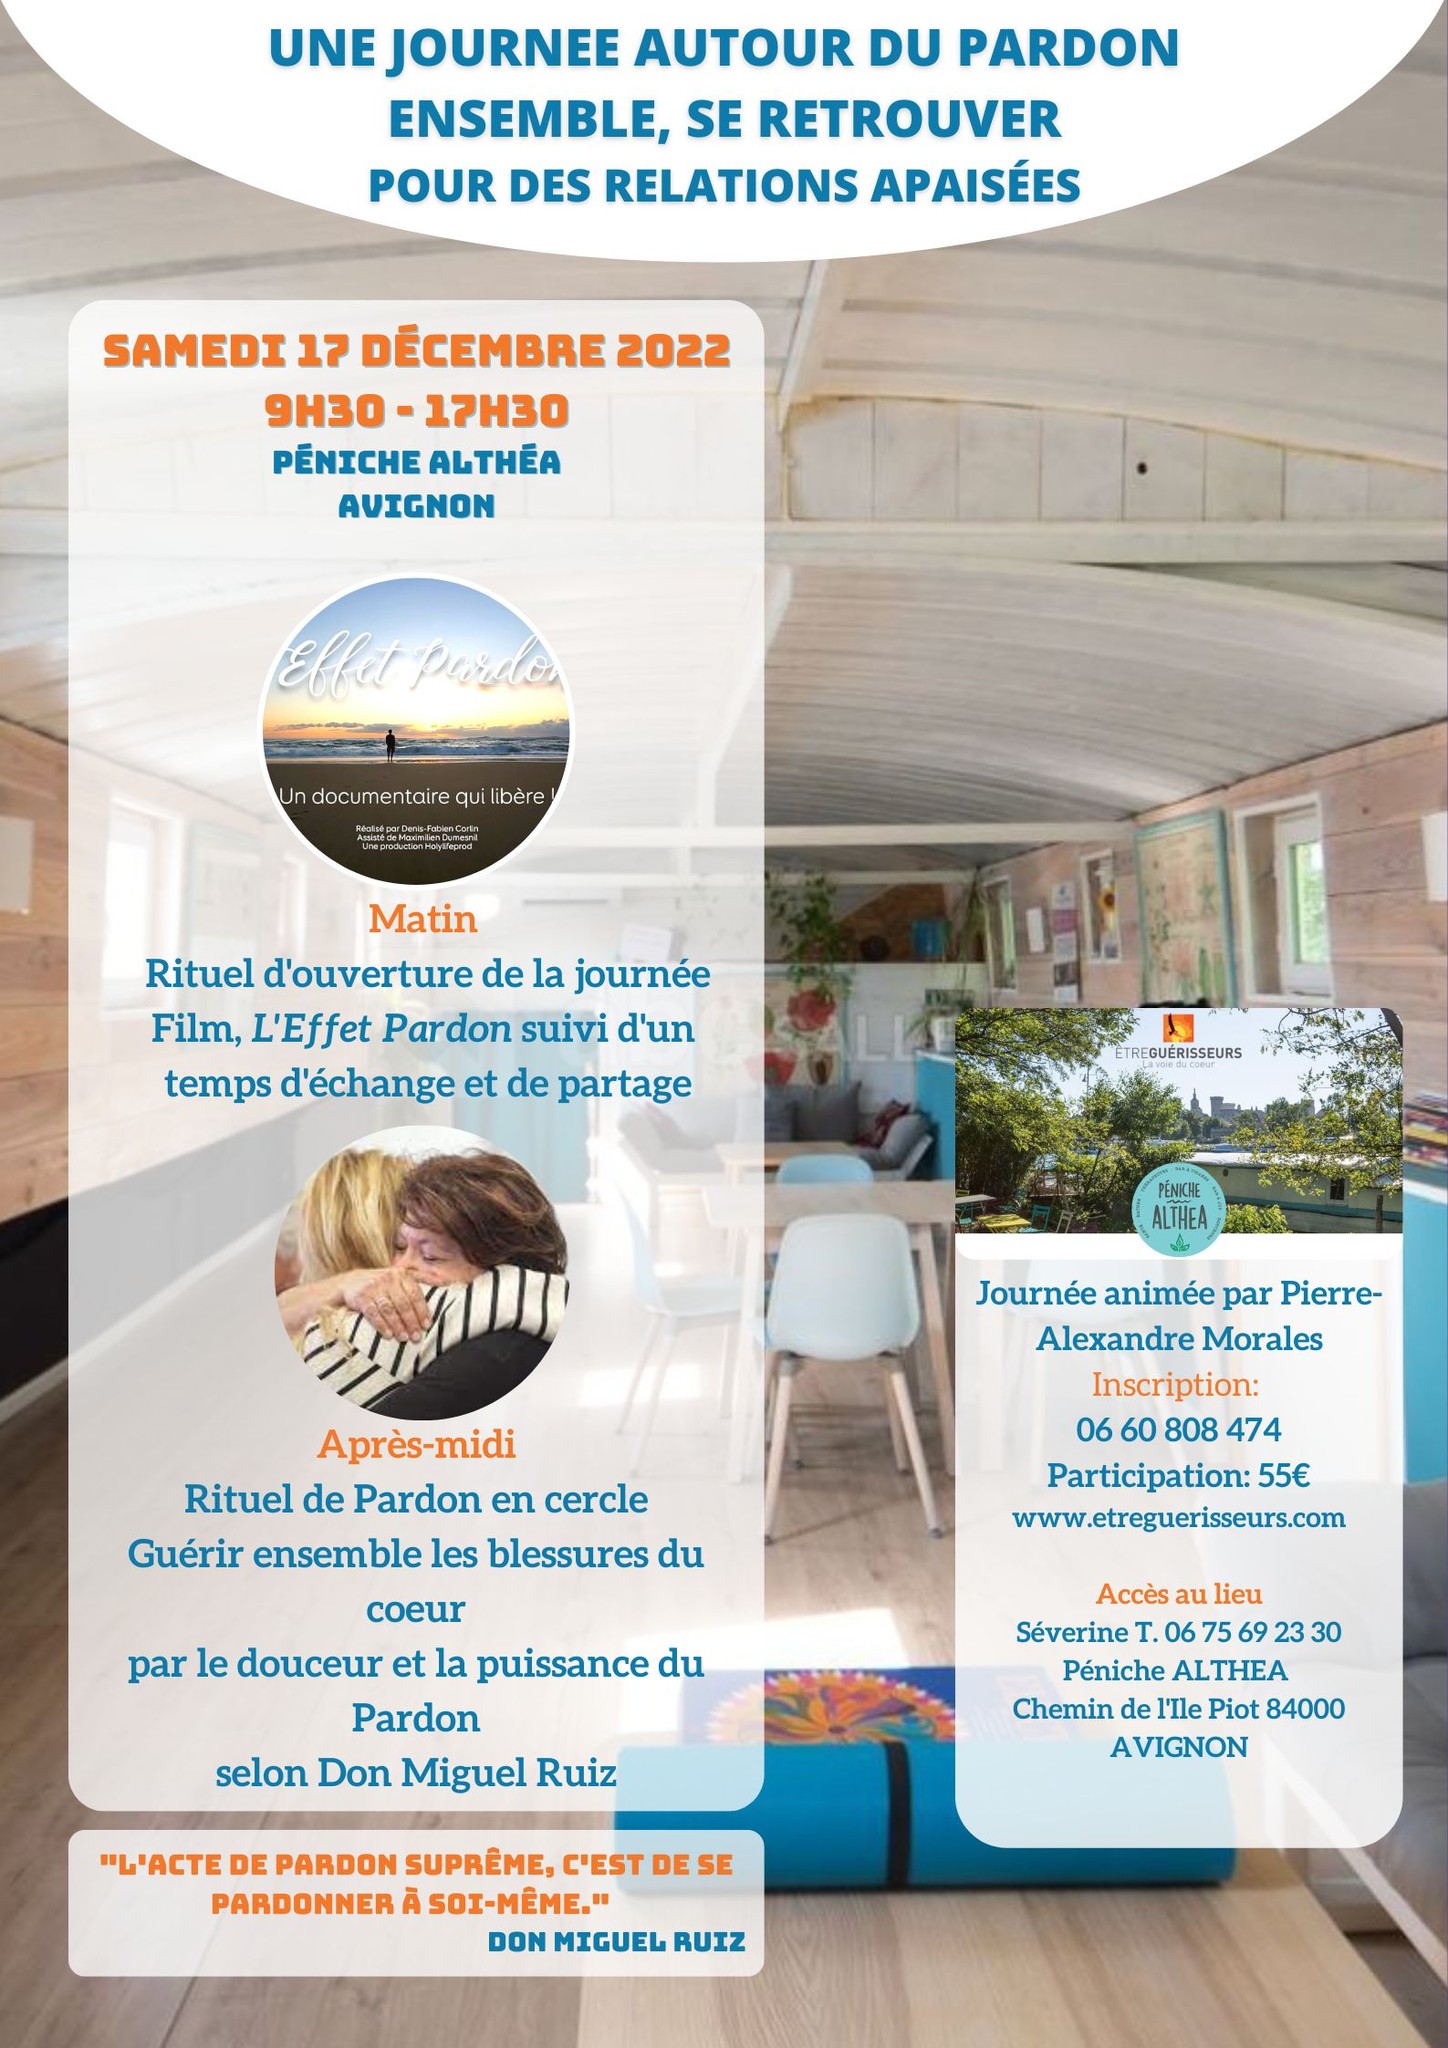 Journée du pardon - Avignon - 17 décembre 2022